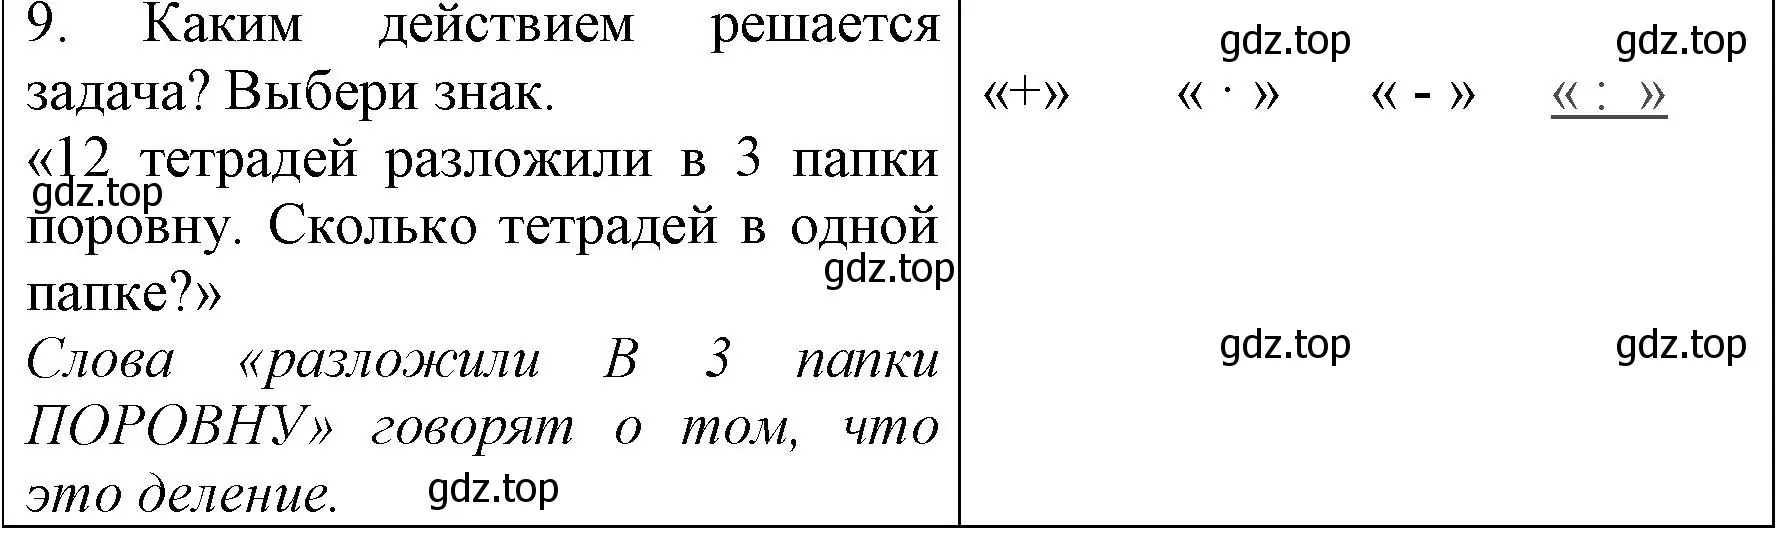 Решение номер 9 (страница 30) гдз по математике 3 класс Моро, Бантова, учебник 1 часть